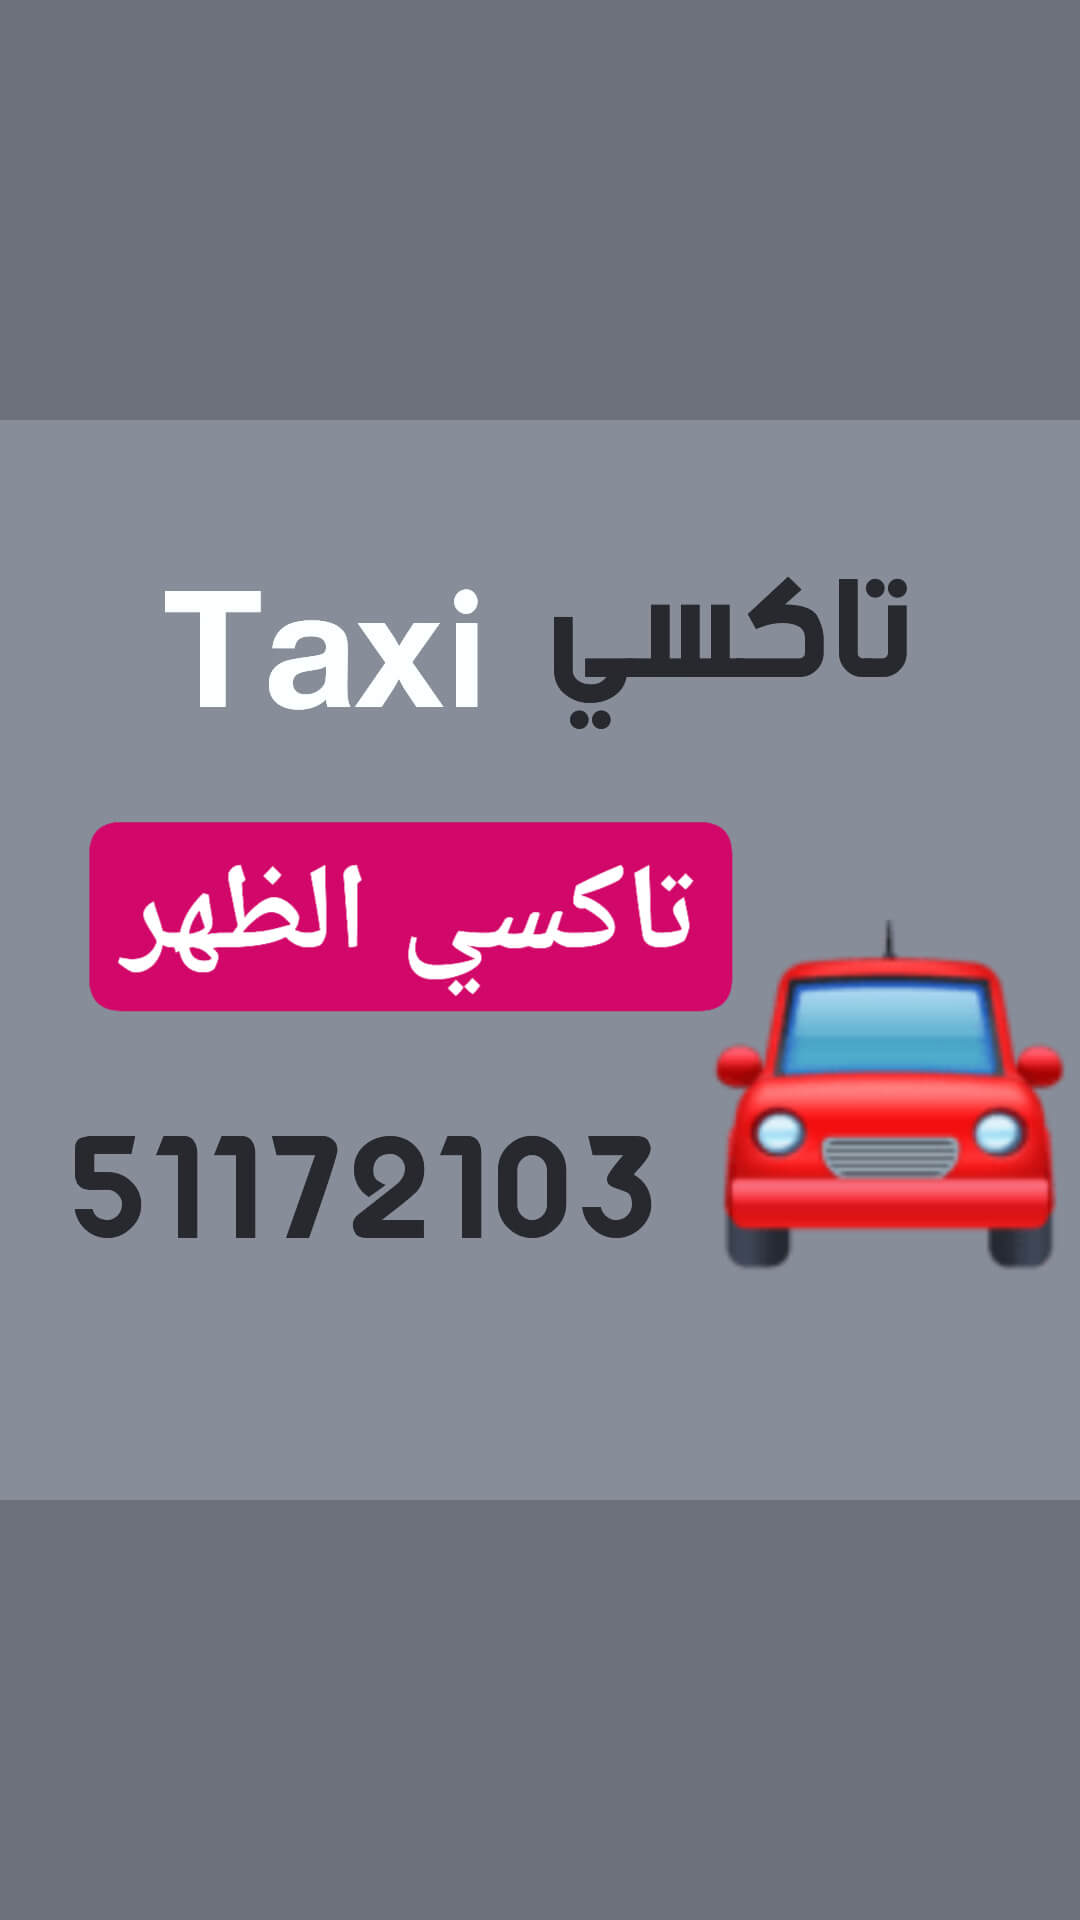 تاكسي الظهر اجره الكويت